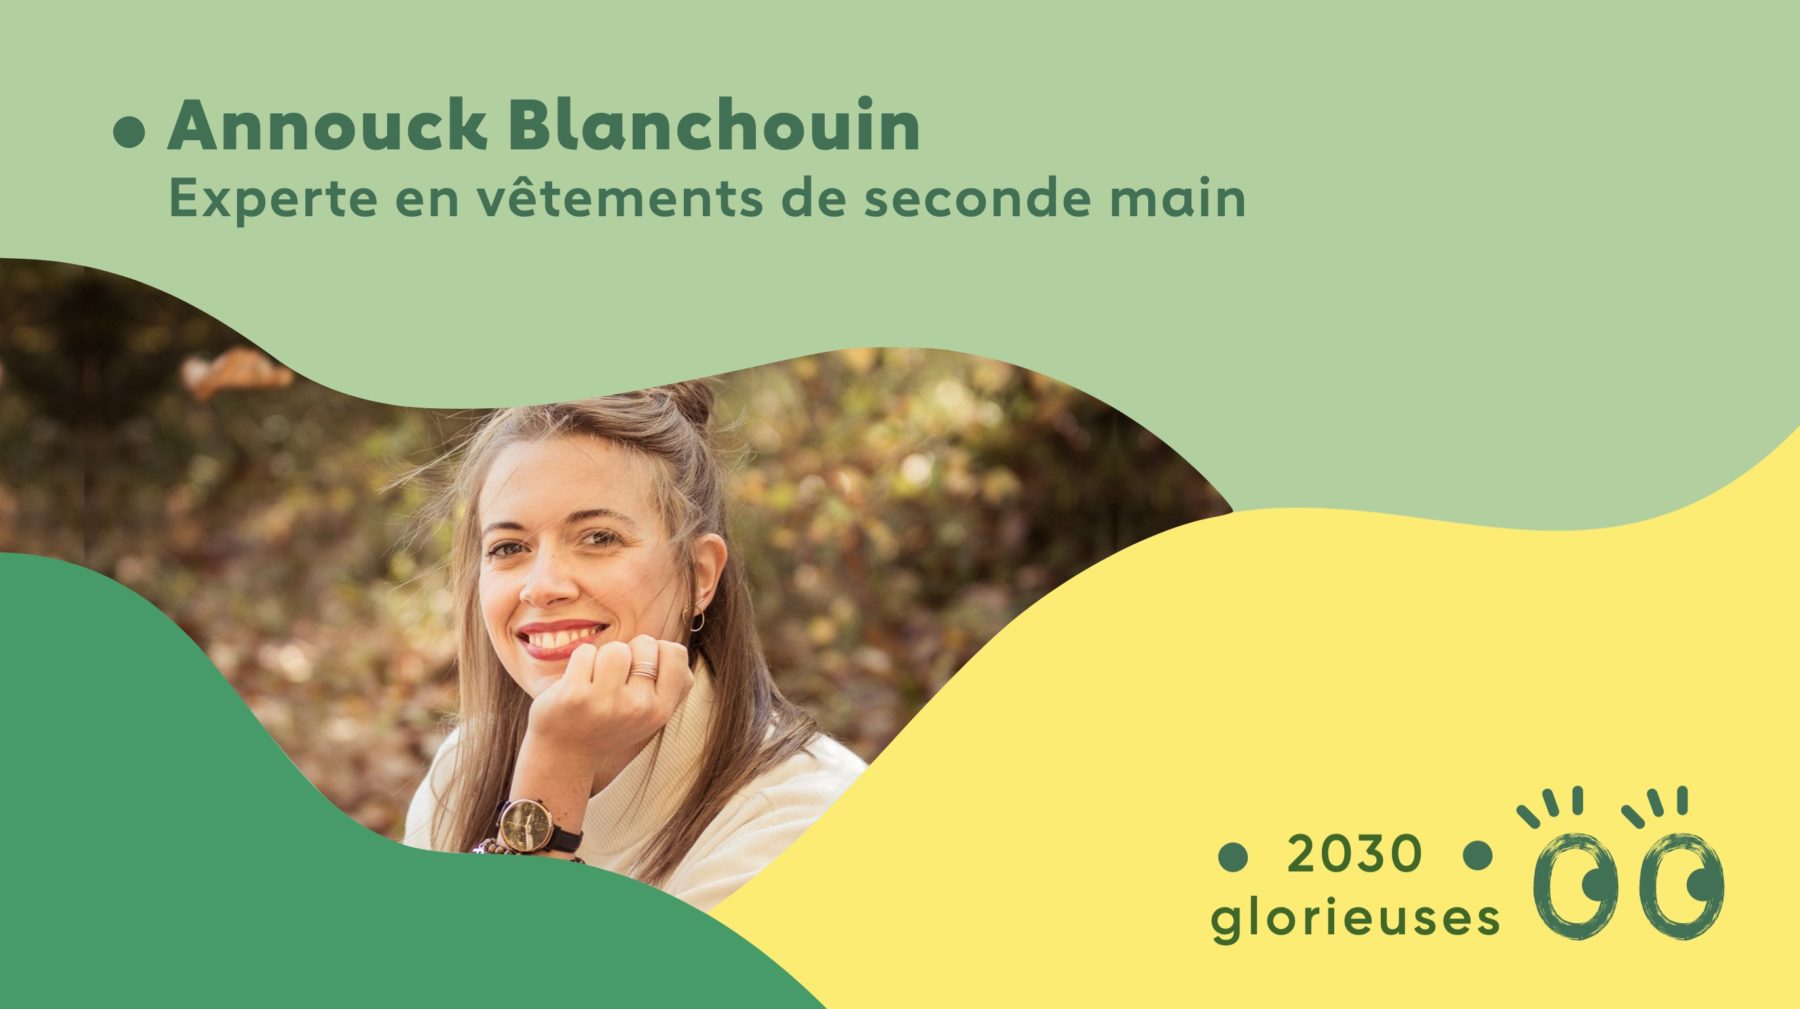 2030 Glorieuses #73 : Annouck Blanchouin : “Il faut redonner de la valeur à nos vêtements."